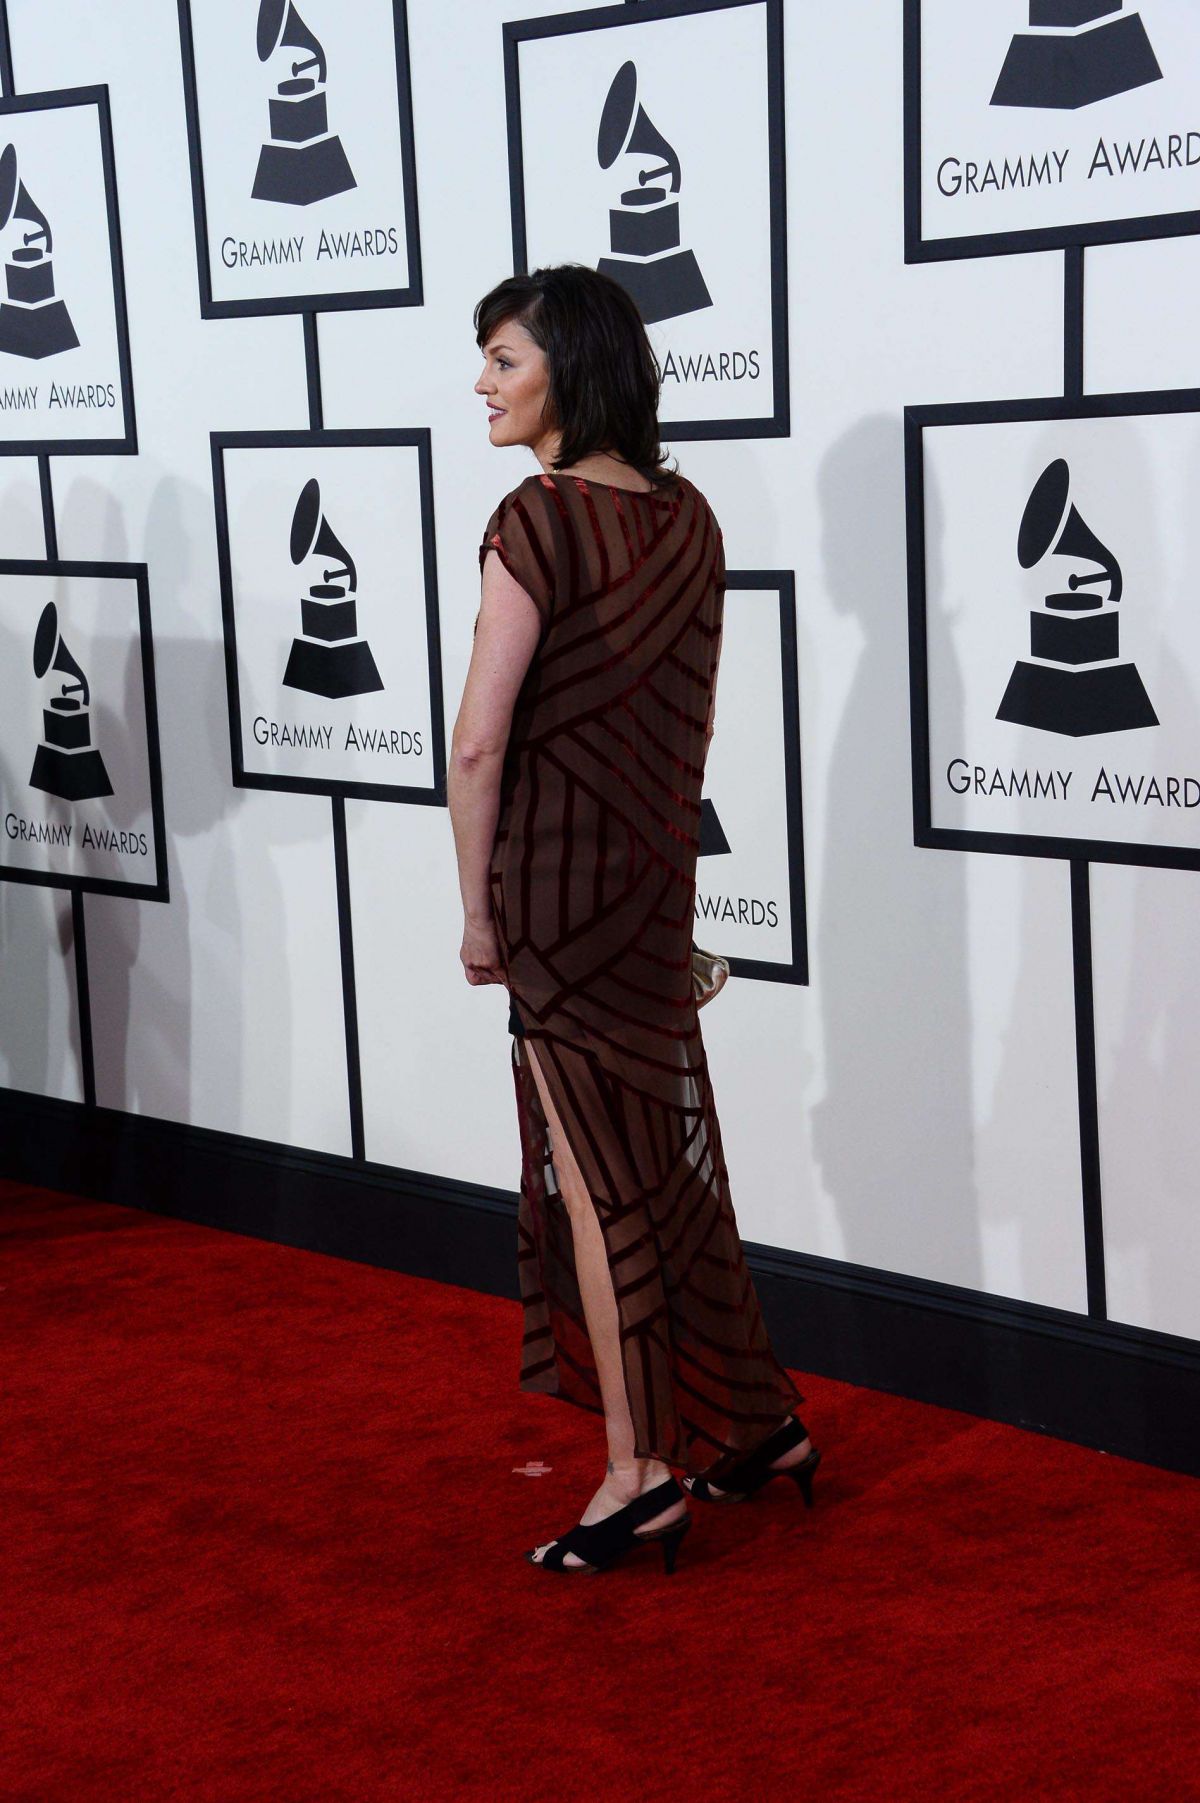 JORJA FOX at 2014 Grammy Awards in Los Angeles.